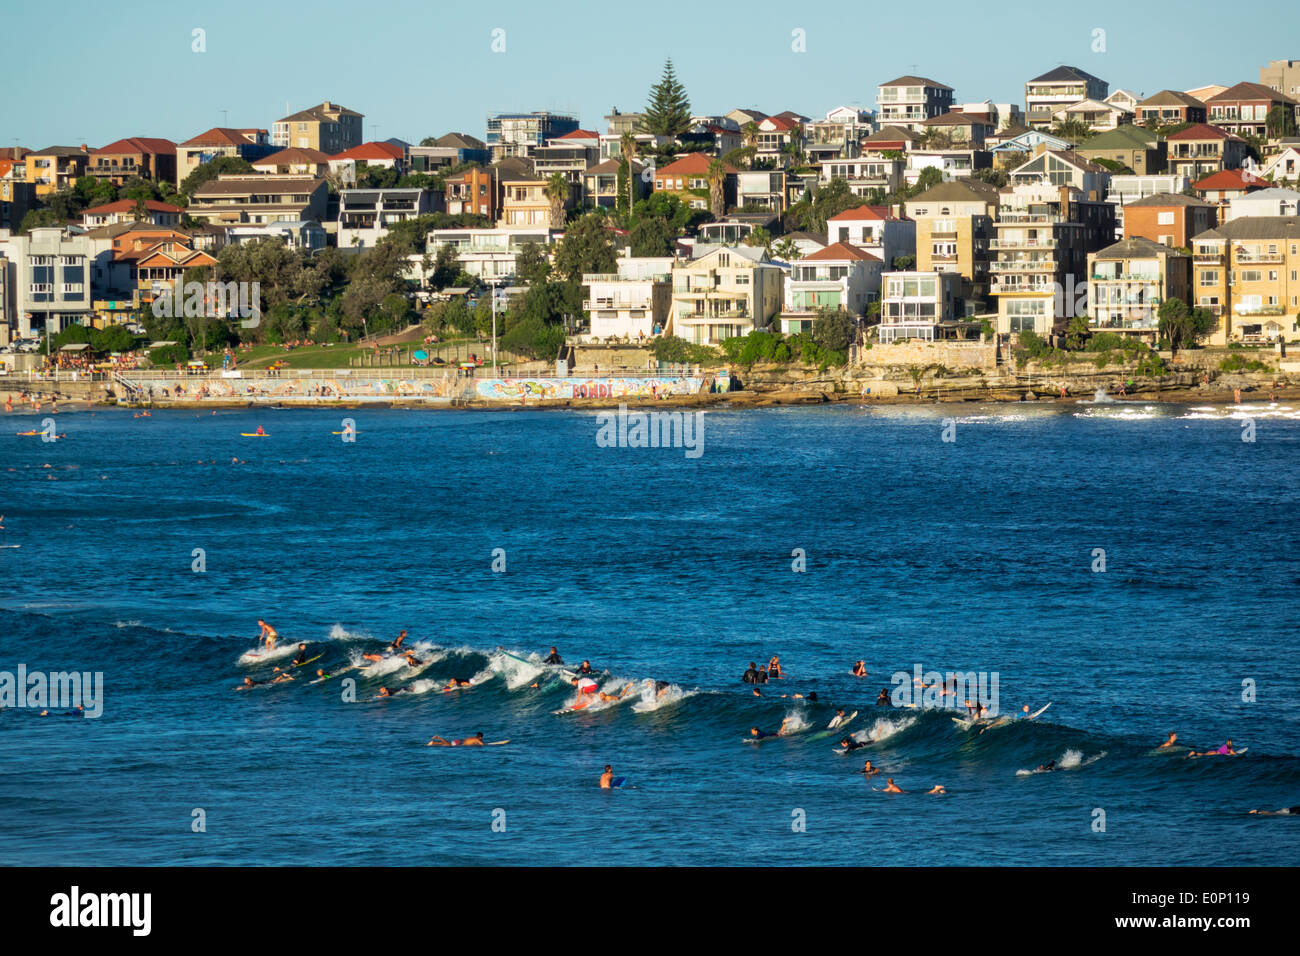 Sydney Australien, Bondi Beach, Pazifischer Ozean, Surfen, Wellen, Sand, öffentlich, North Bondi, Surfers, AU140310201 Stockfoto